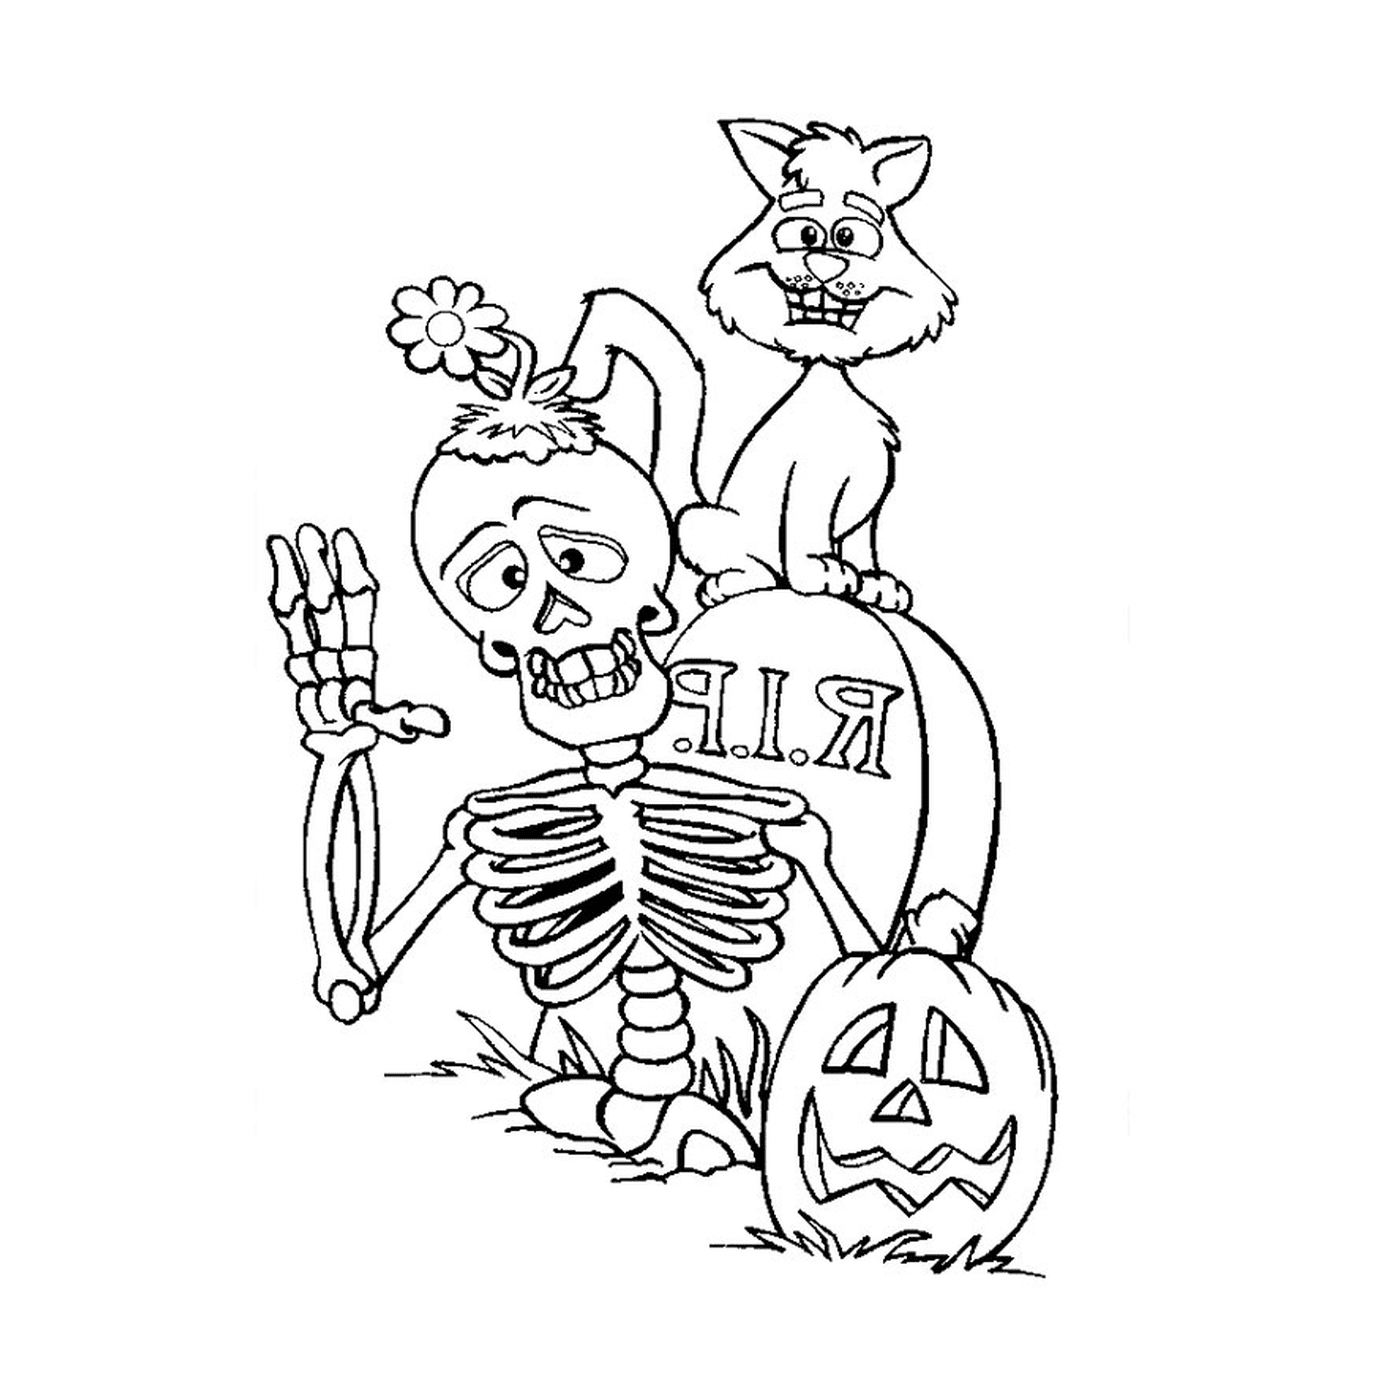  Esqueleto aterrador con perro 